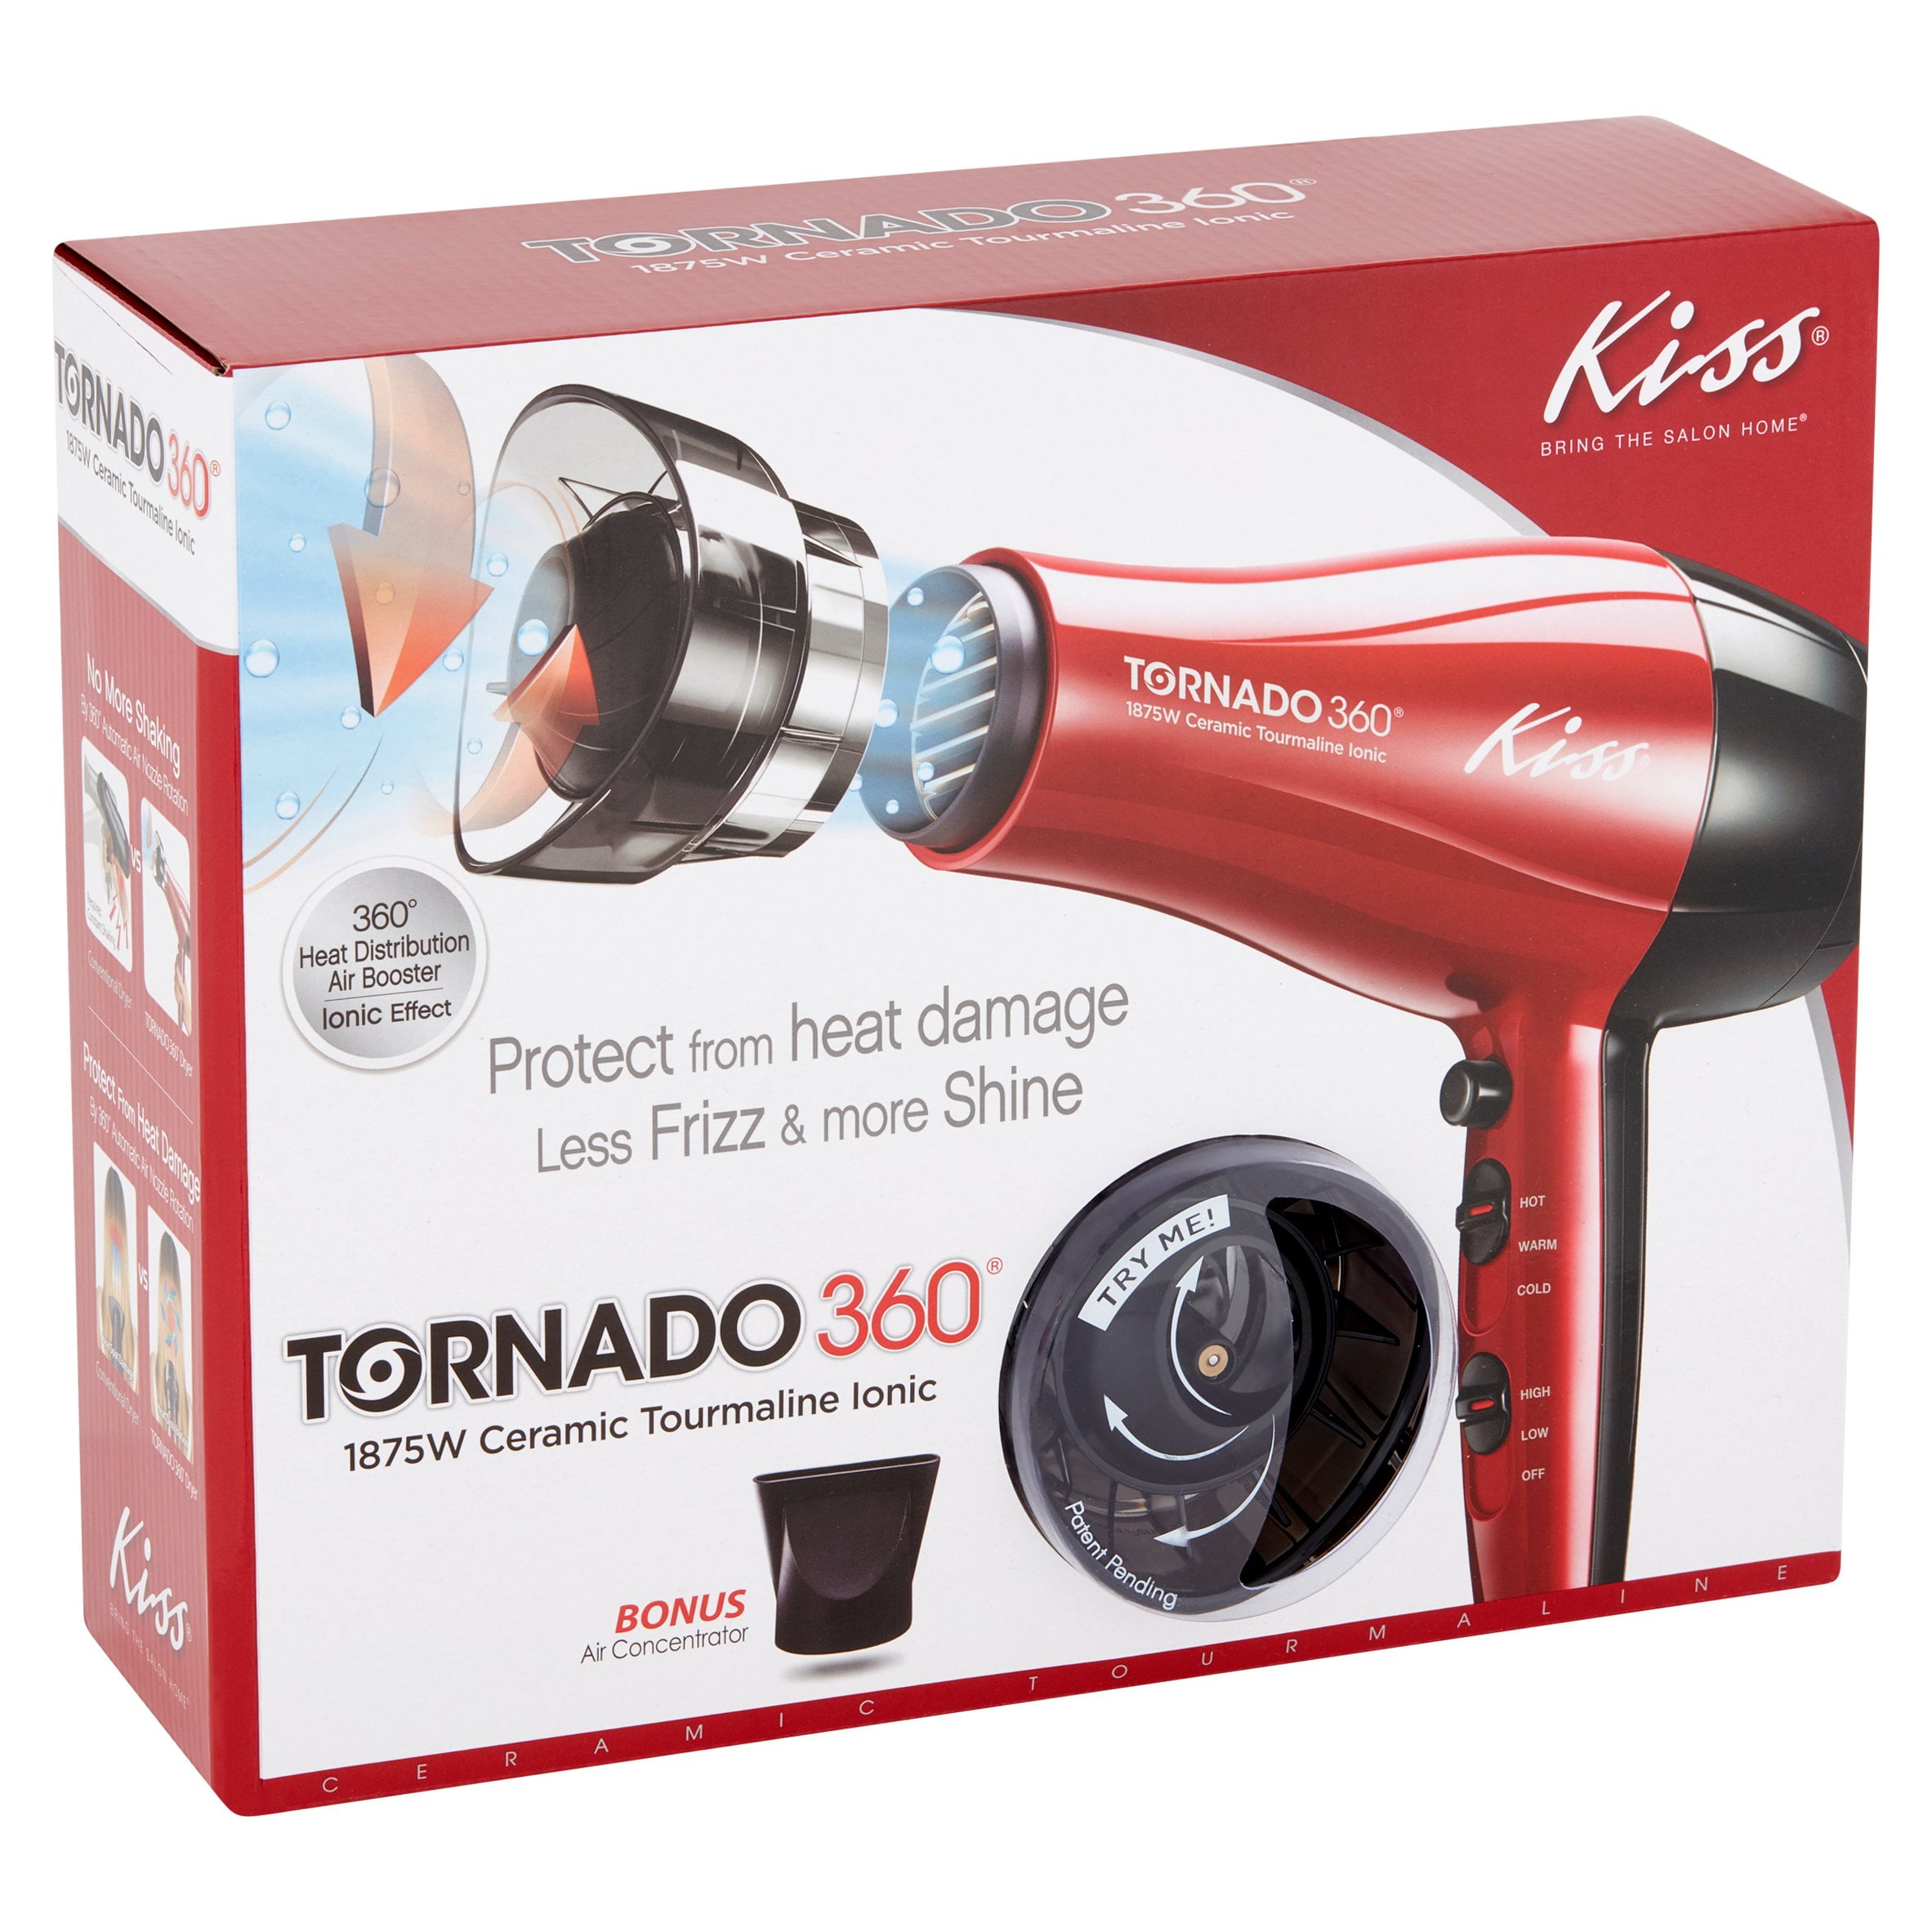 Kiss Tornado 360 1875W Ceramic Tourmaline Ionic Hair Dryer